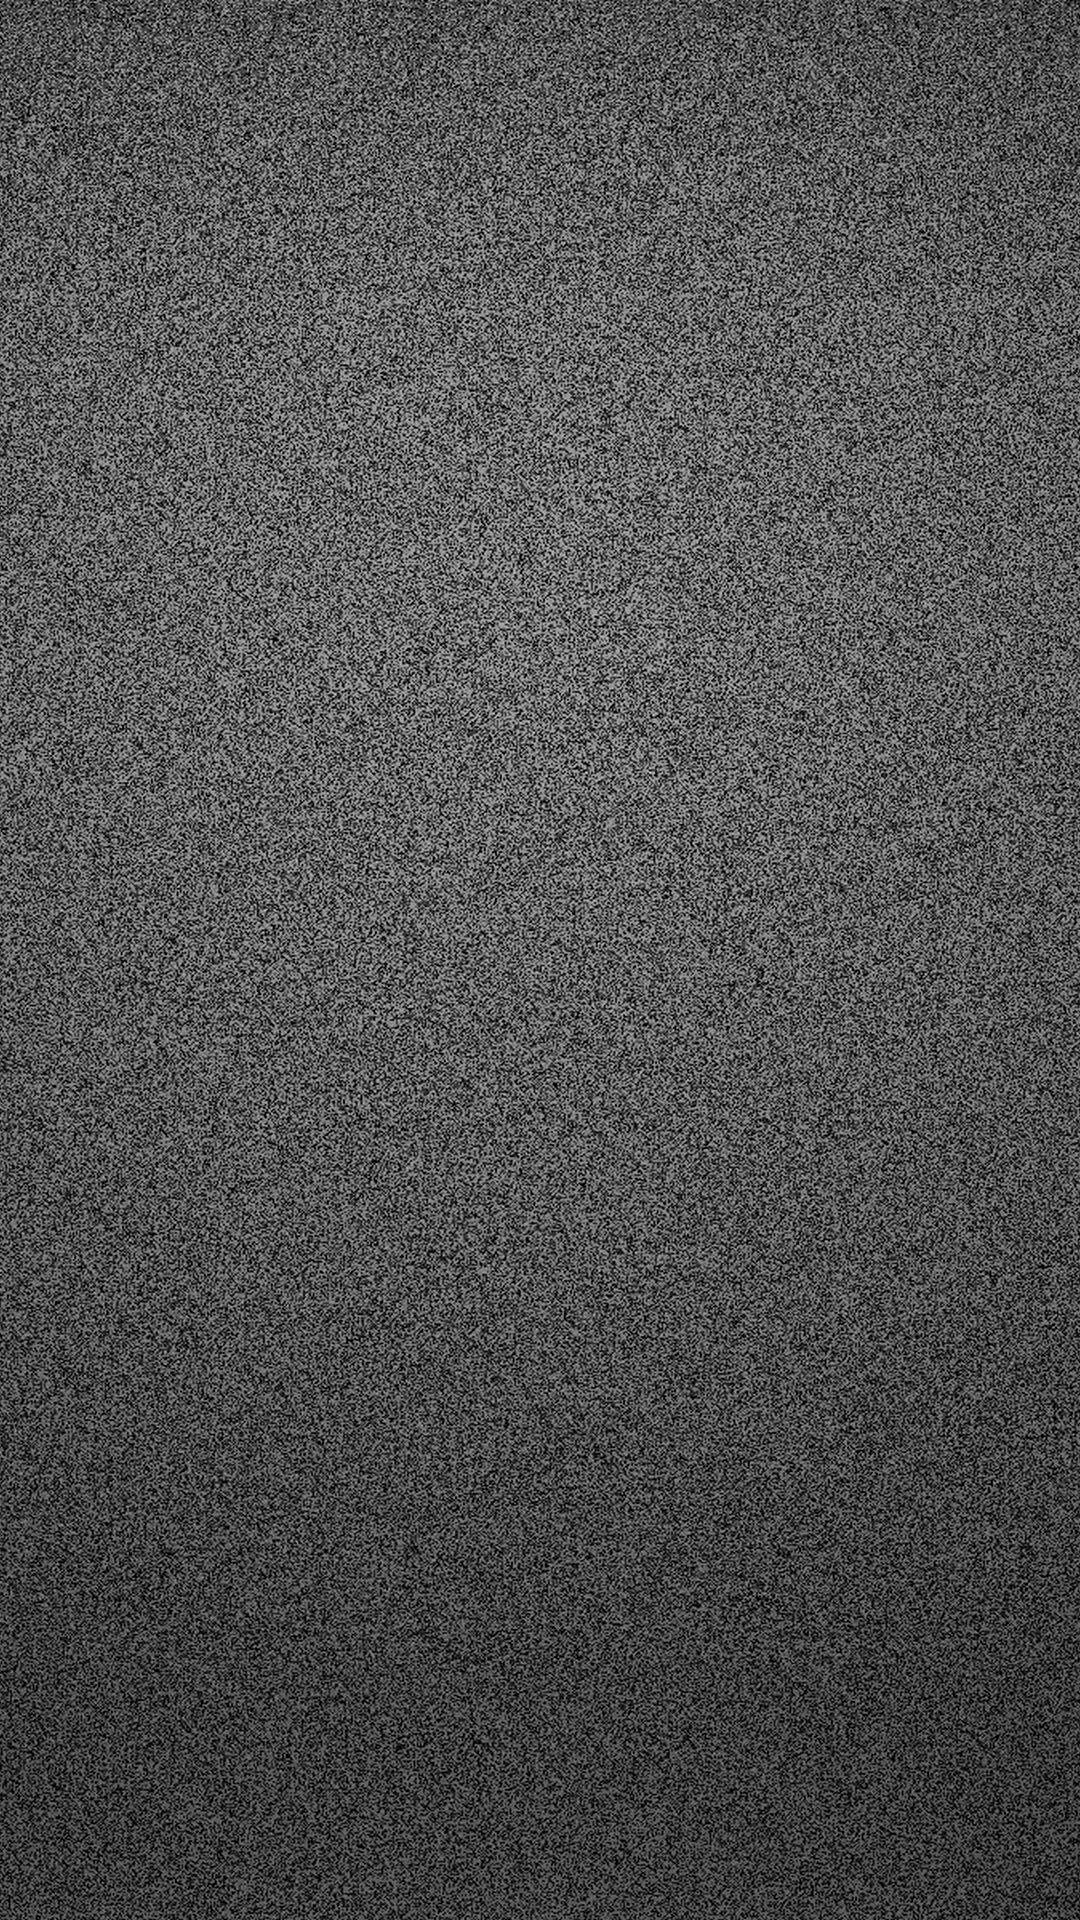 Screen Static Dark Grey Iphone Wallpaper